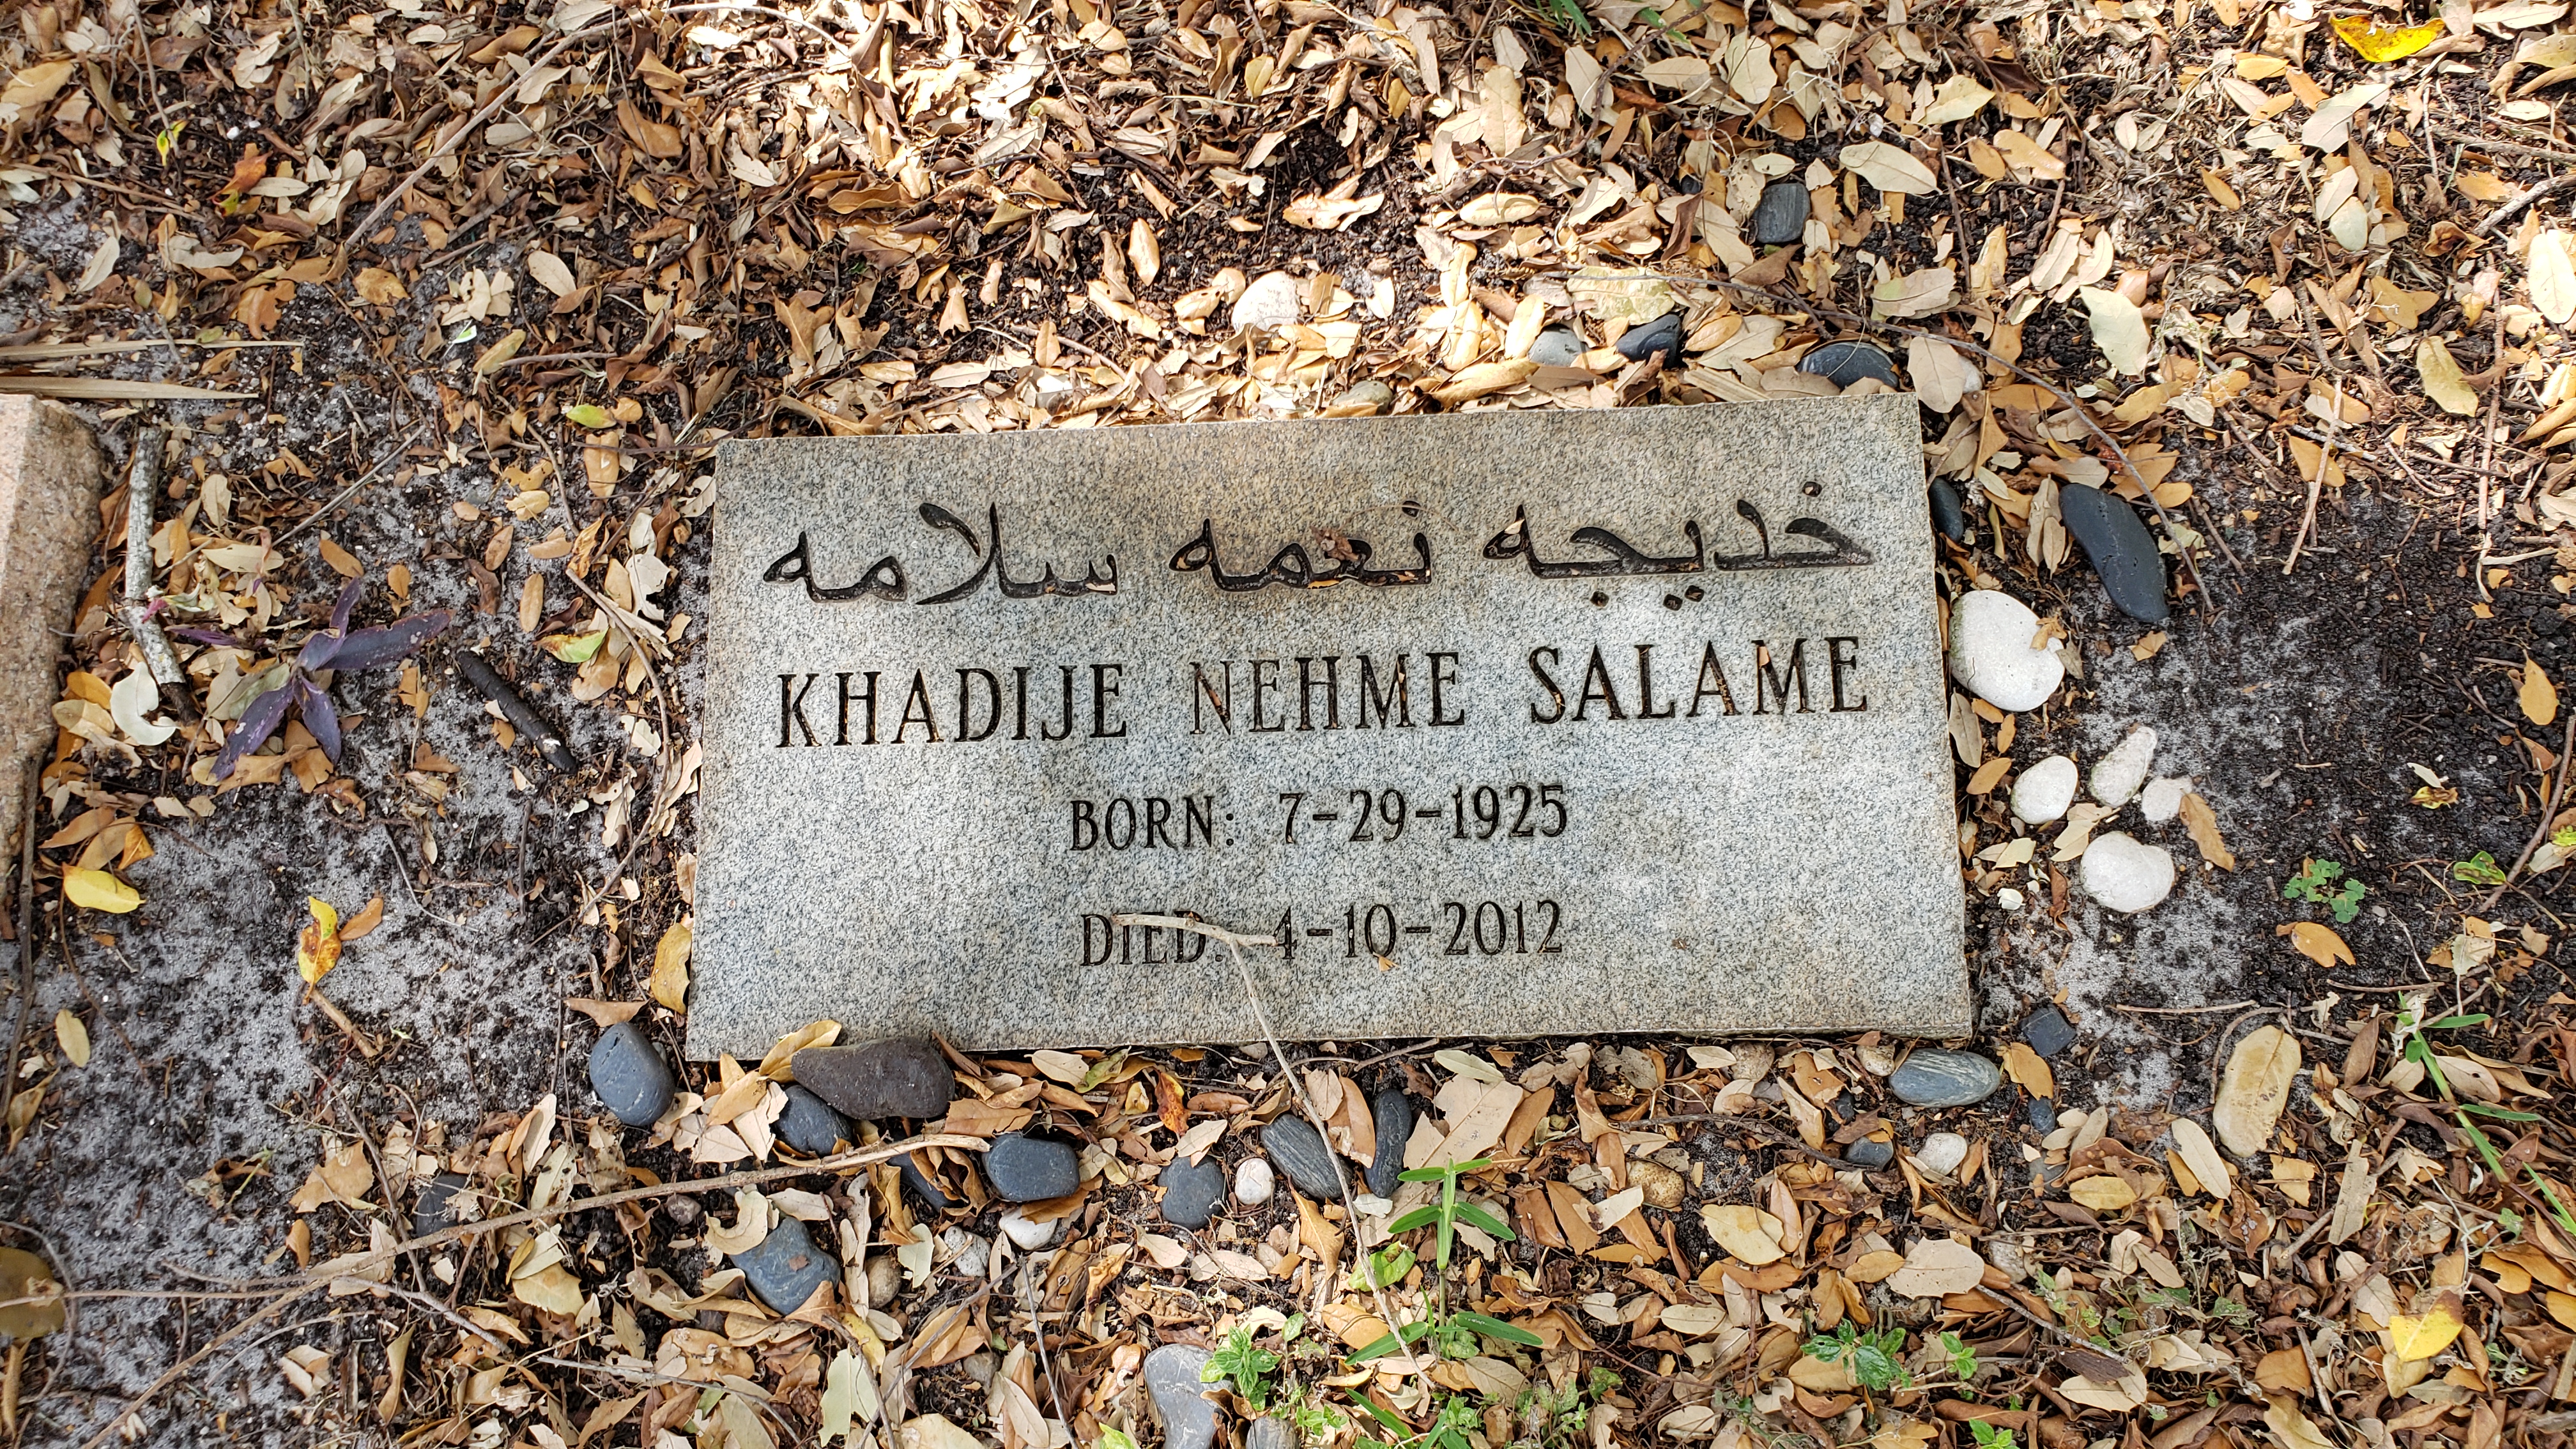 Khadije Nehme Salame